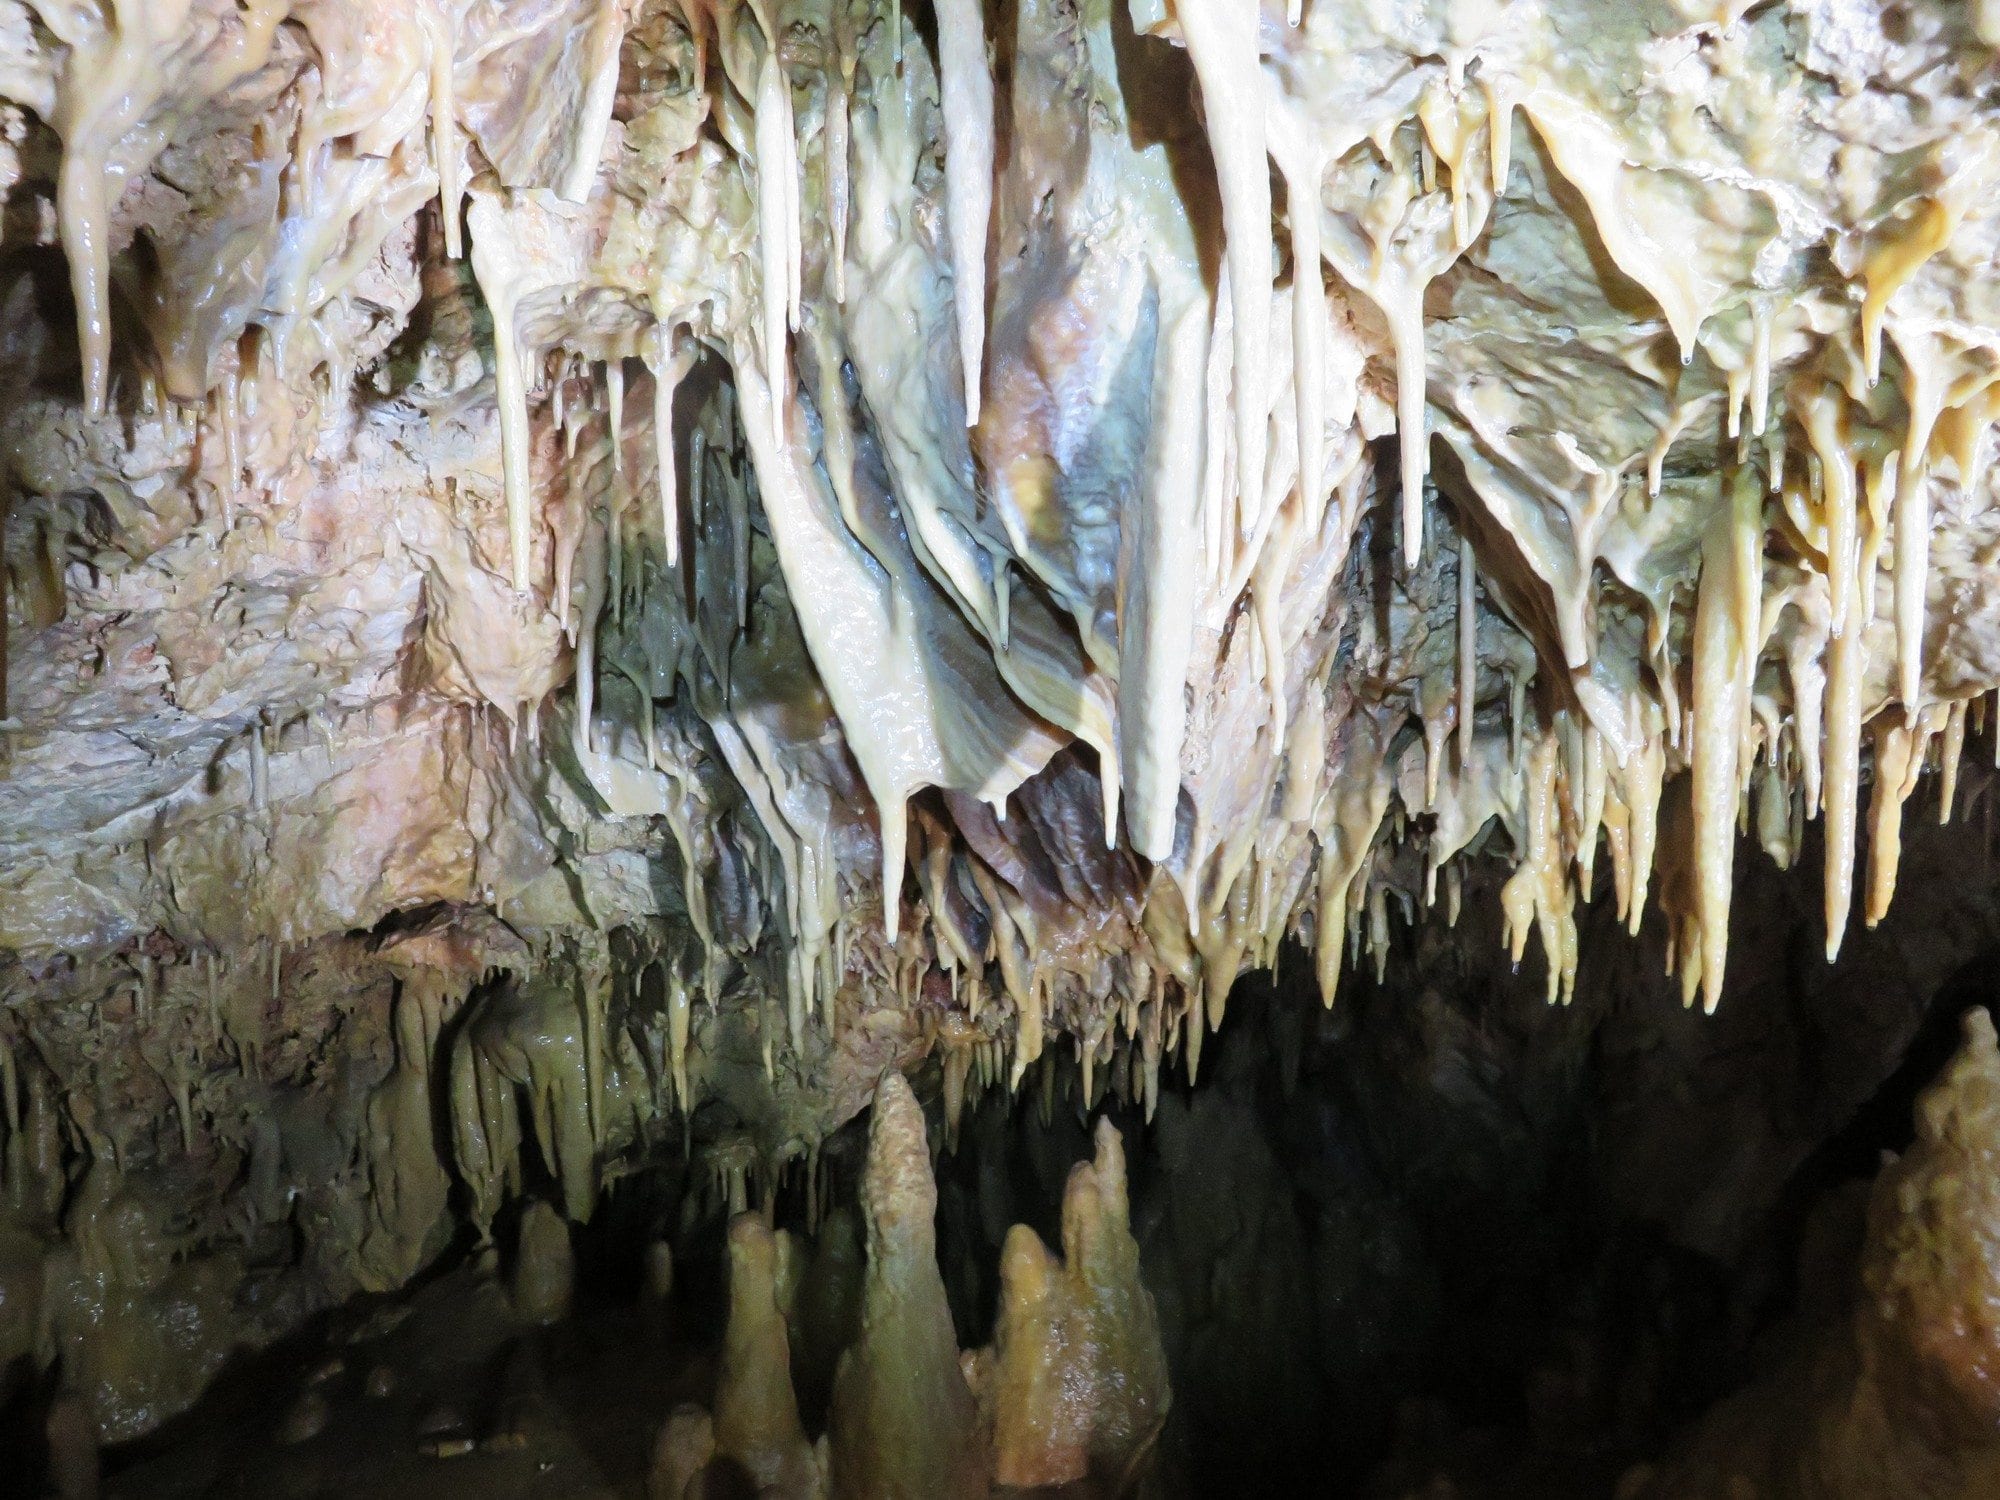 נטיפים במערה - סנפלינג וטיפוס - ערוצים בטבע